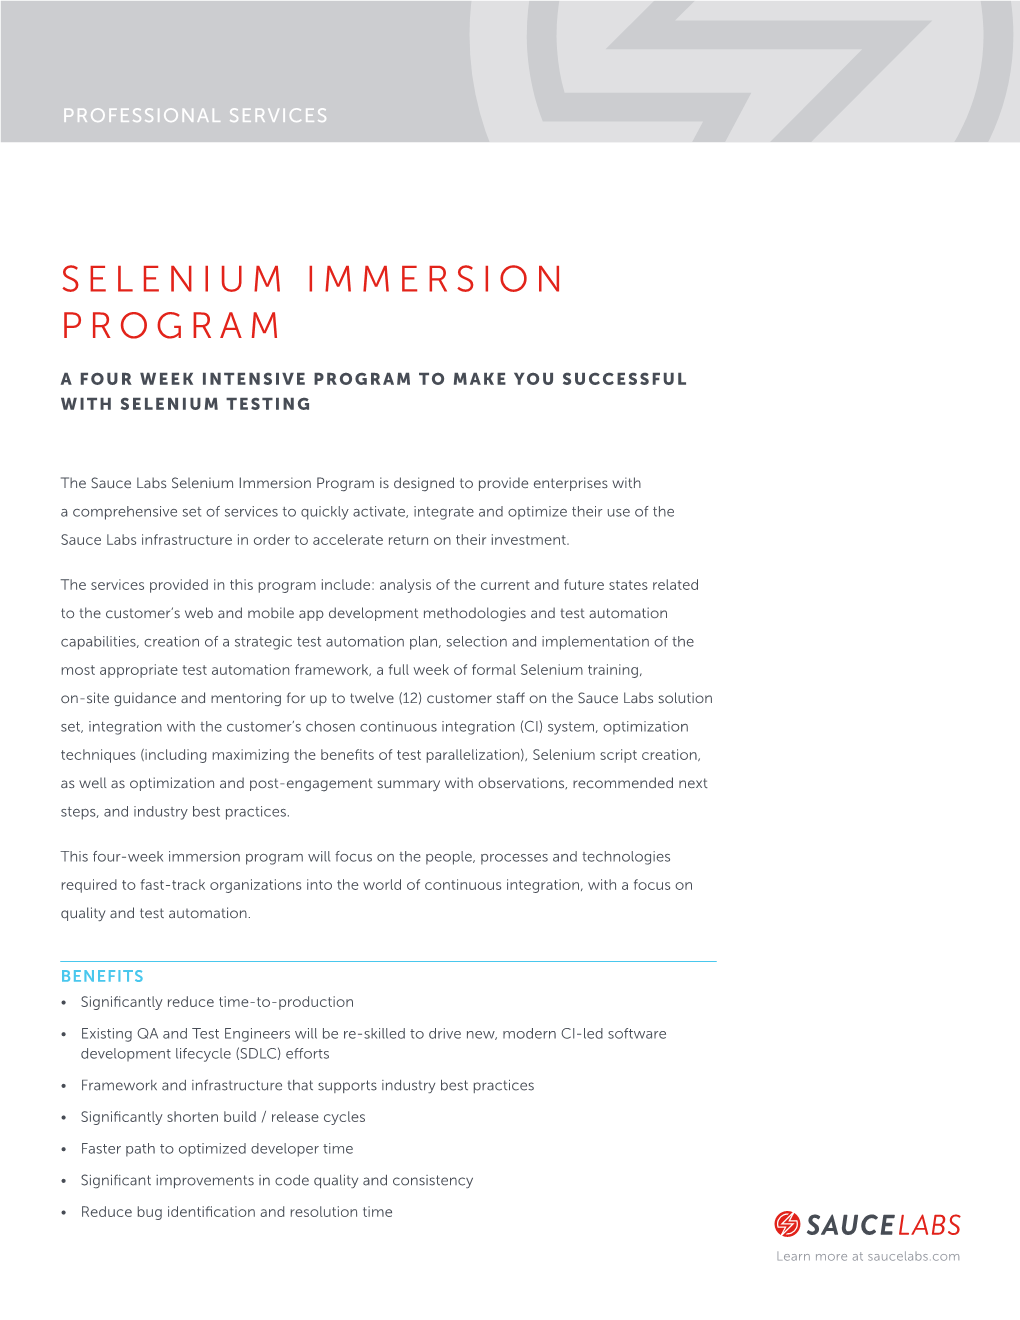 Selenium Immersion Program